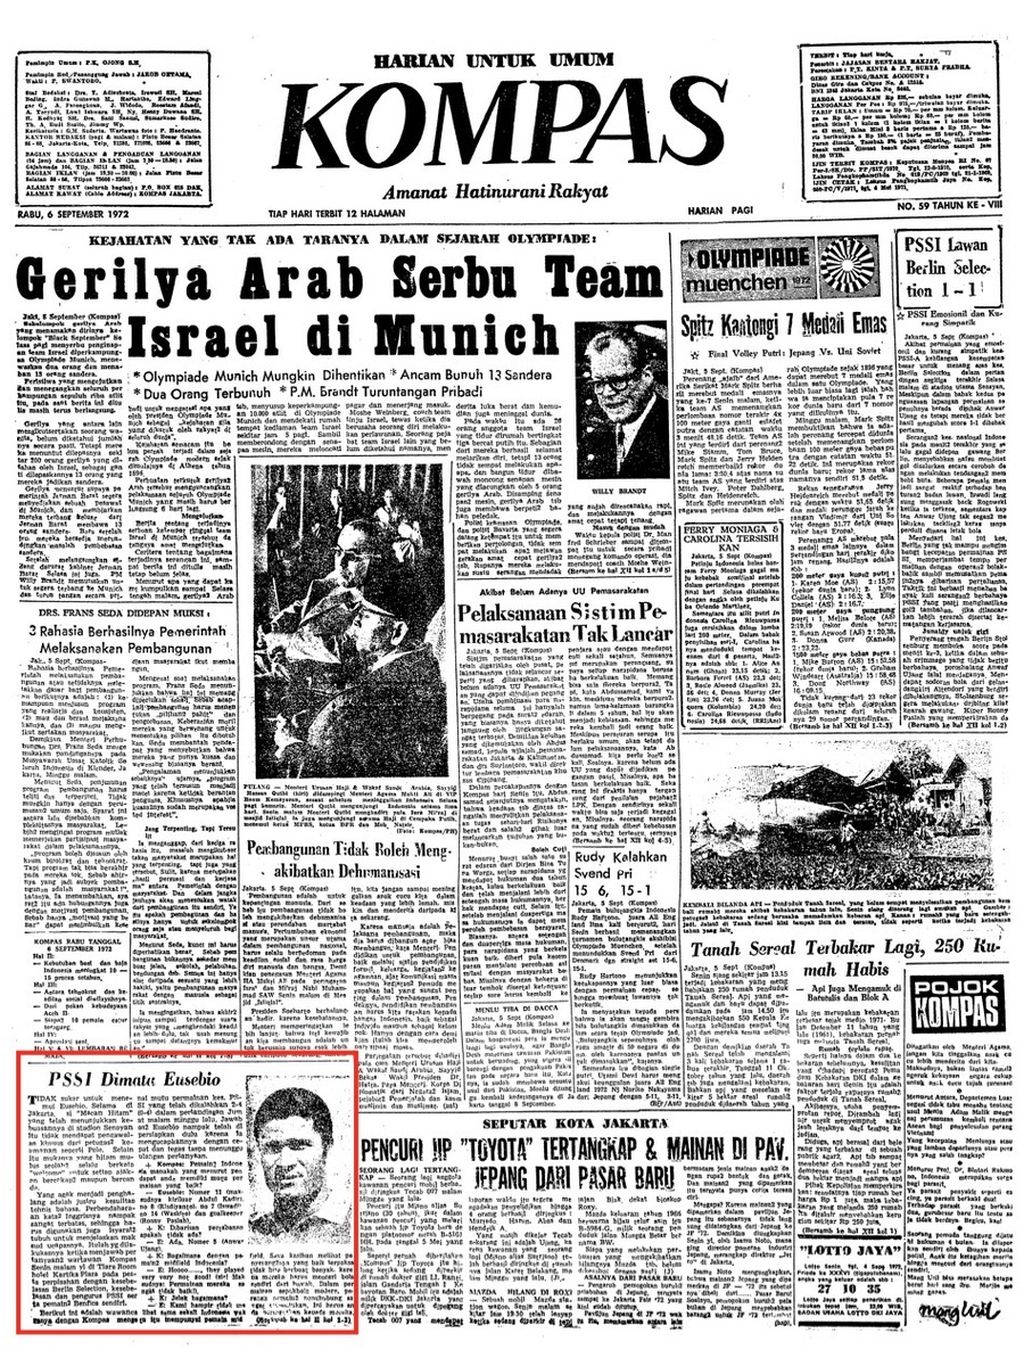 Halaman utama "Kompas", Rabu, 6 September 1972, yang memuat wawancara dengan bintang sepak bola asal Portugal, Eusebio, dengan judul "PSSI di mata Eusebio".